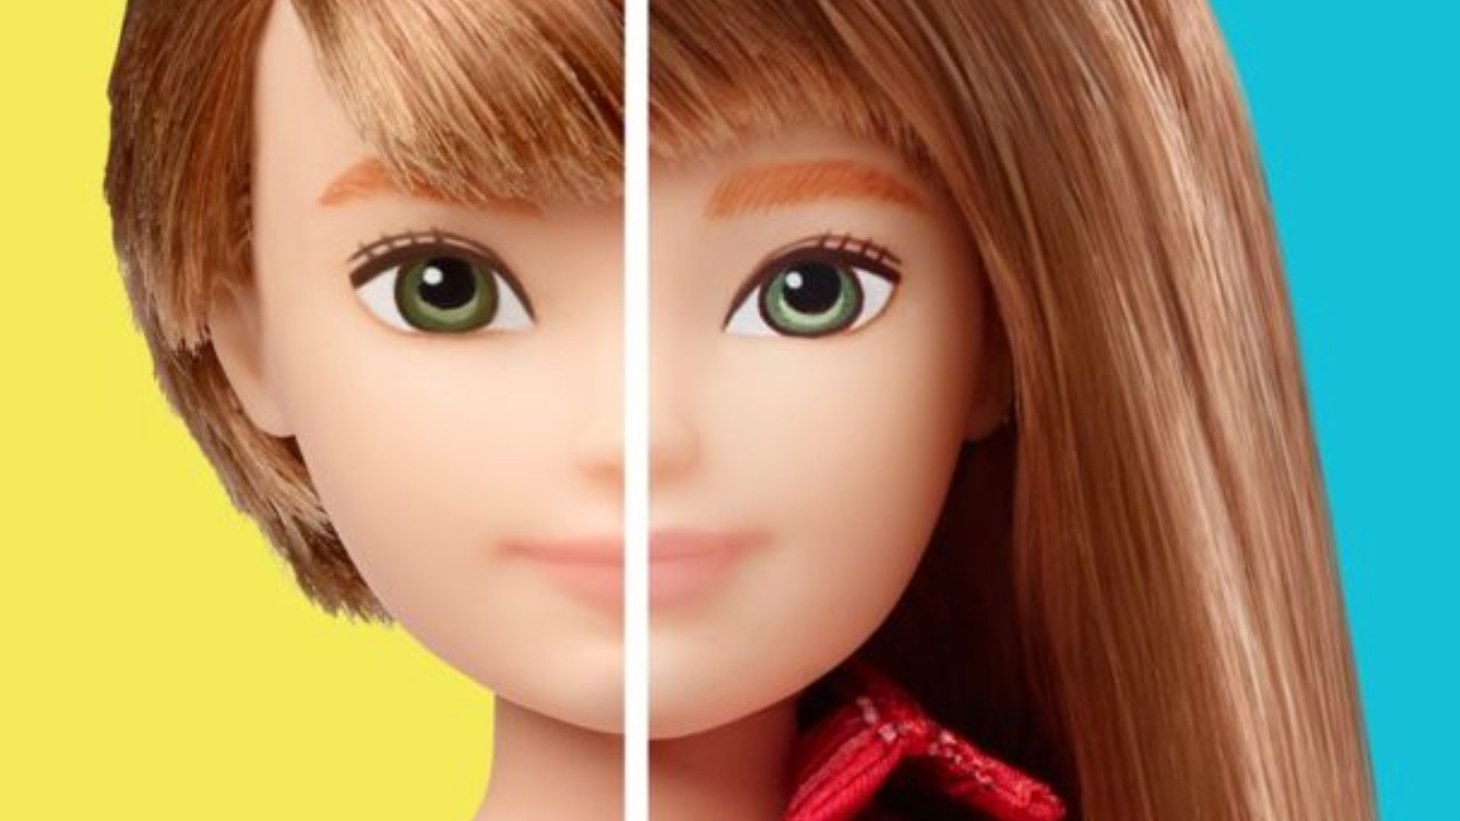 Компания Mattel выпустила коллекцию гендернонейтральных кукол Барби